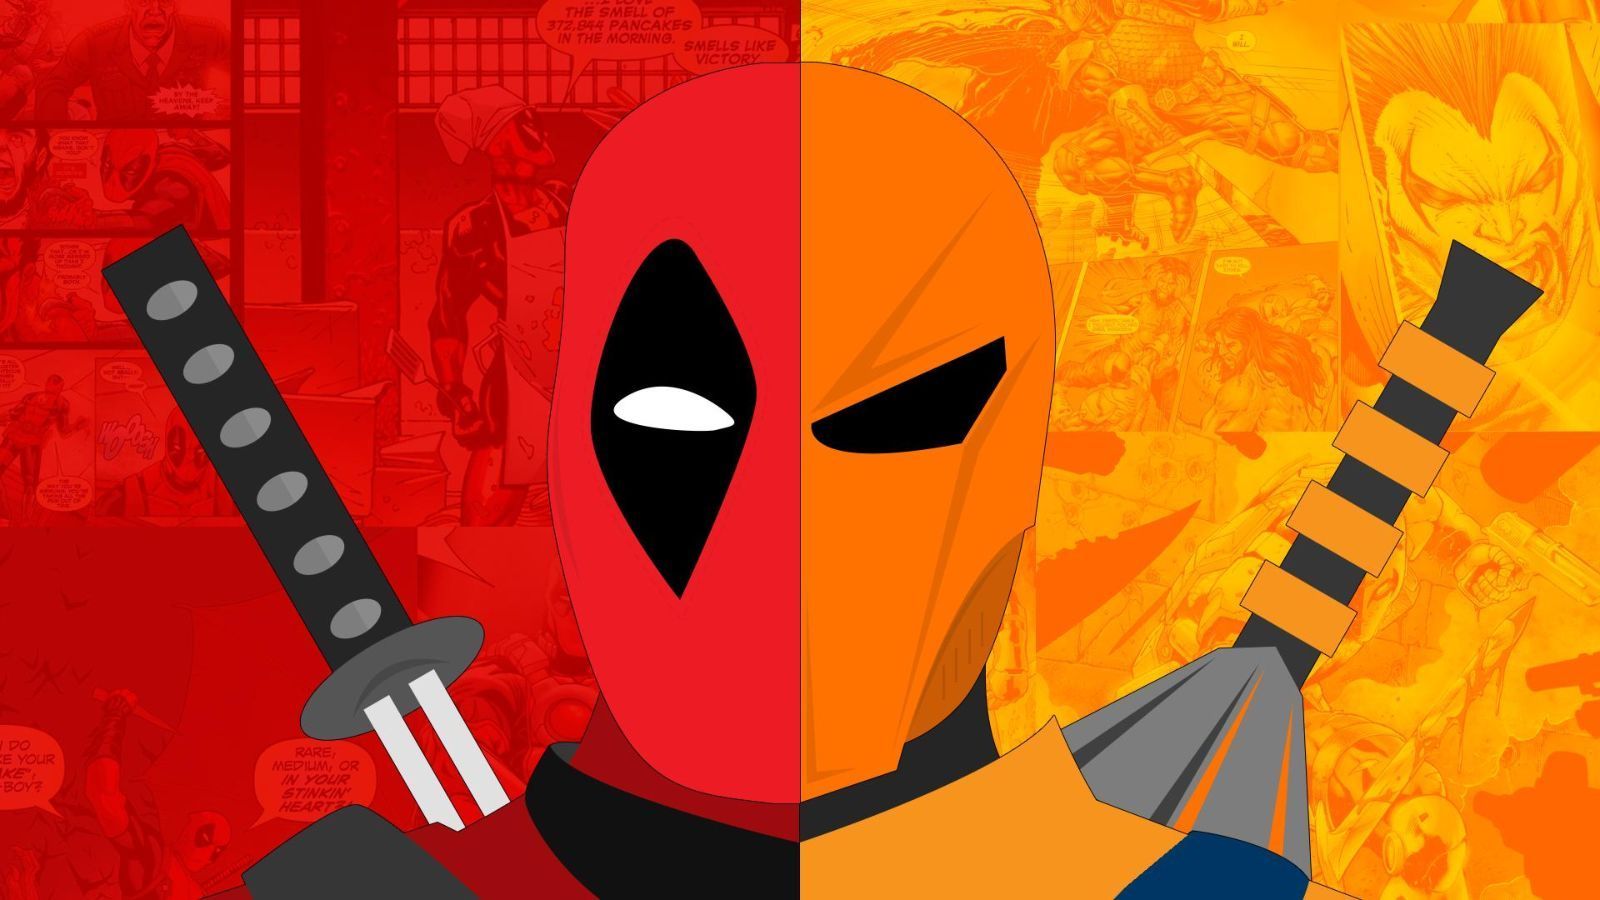 Deathstroke vs Deadpool Logo Wallpaper Free Deathstroke vs Deadpool Logo Background